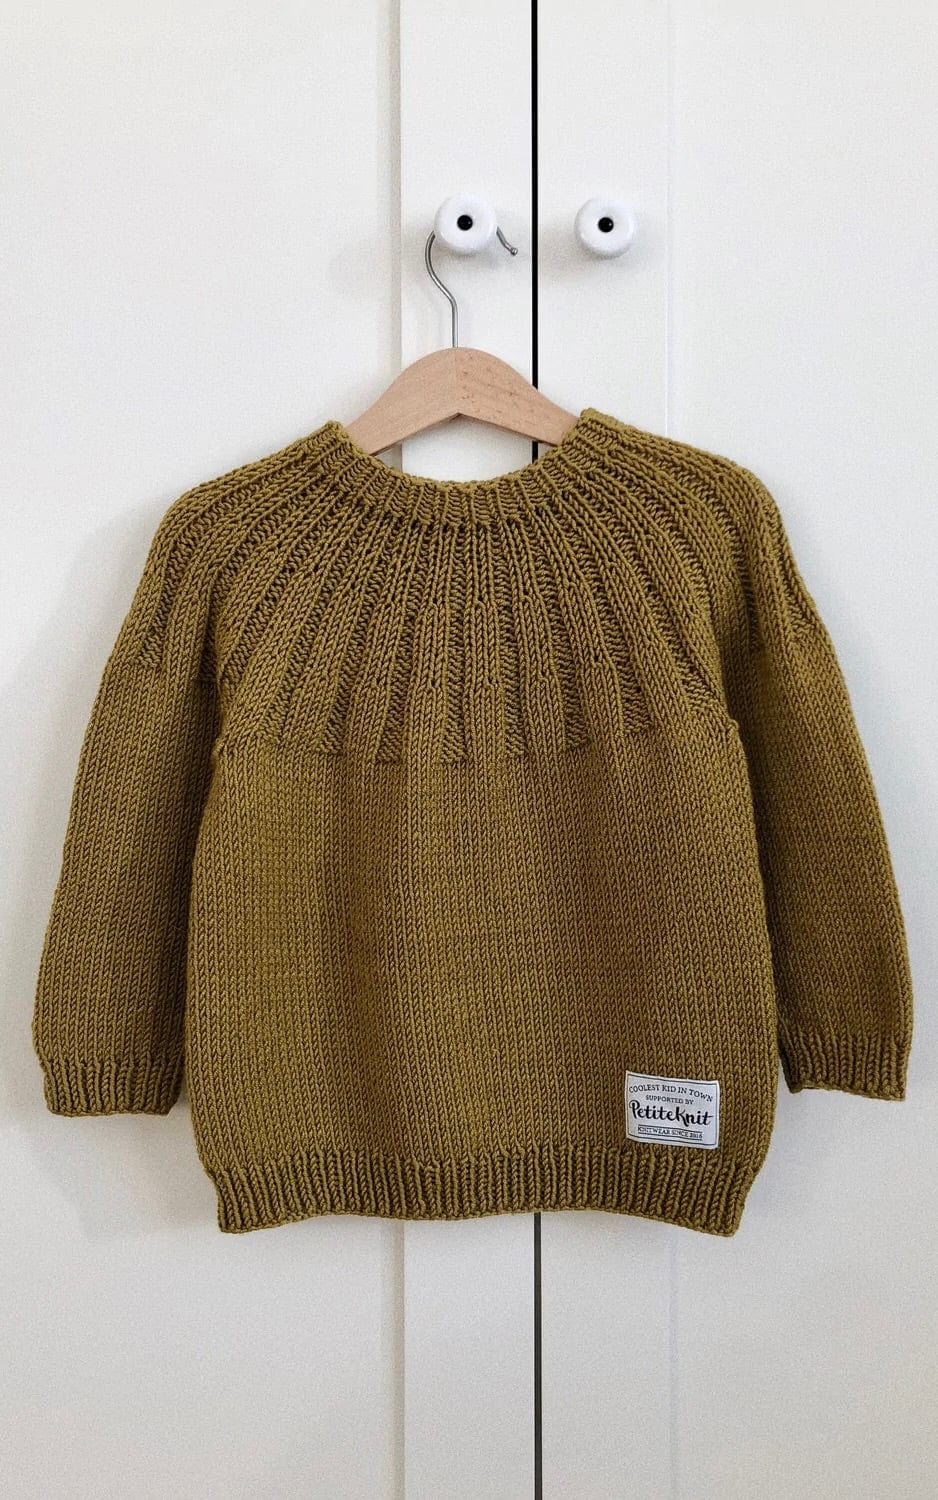 Haralds Sweater - DOUBLE SUNDAY - Strickset von PETITE KNIT jetzt online kaufen bei OONIQUE